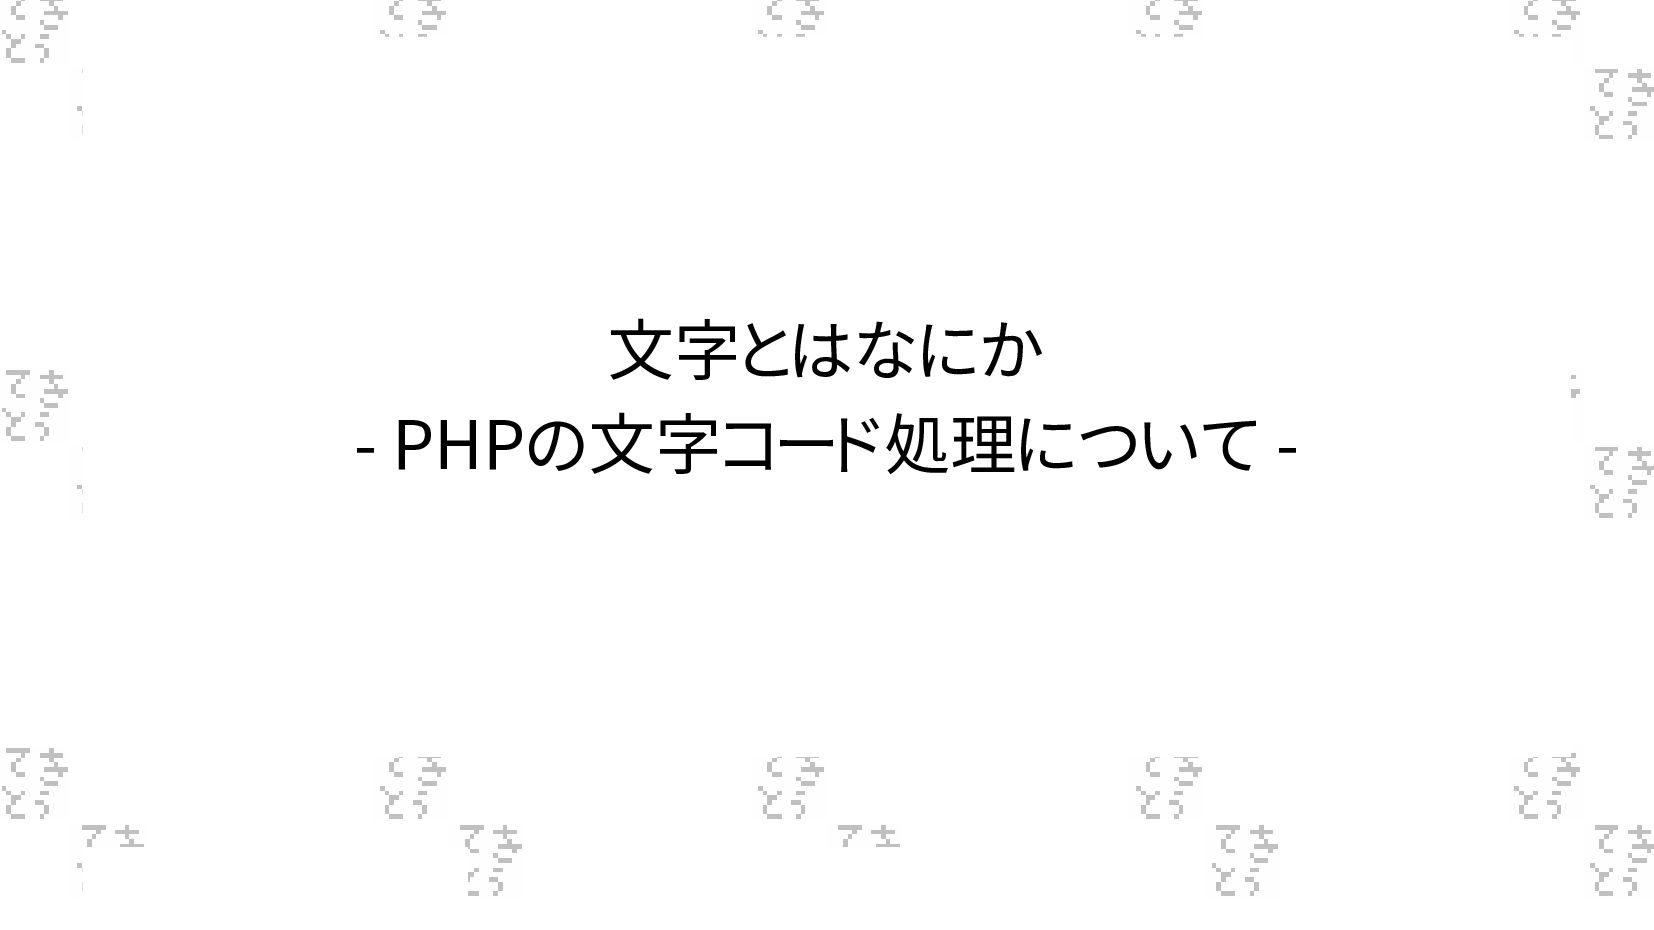 Slide Top: 文字とはなにか - PHPの文字コード処理について -